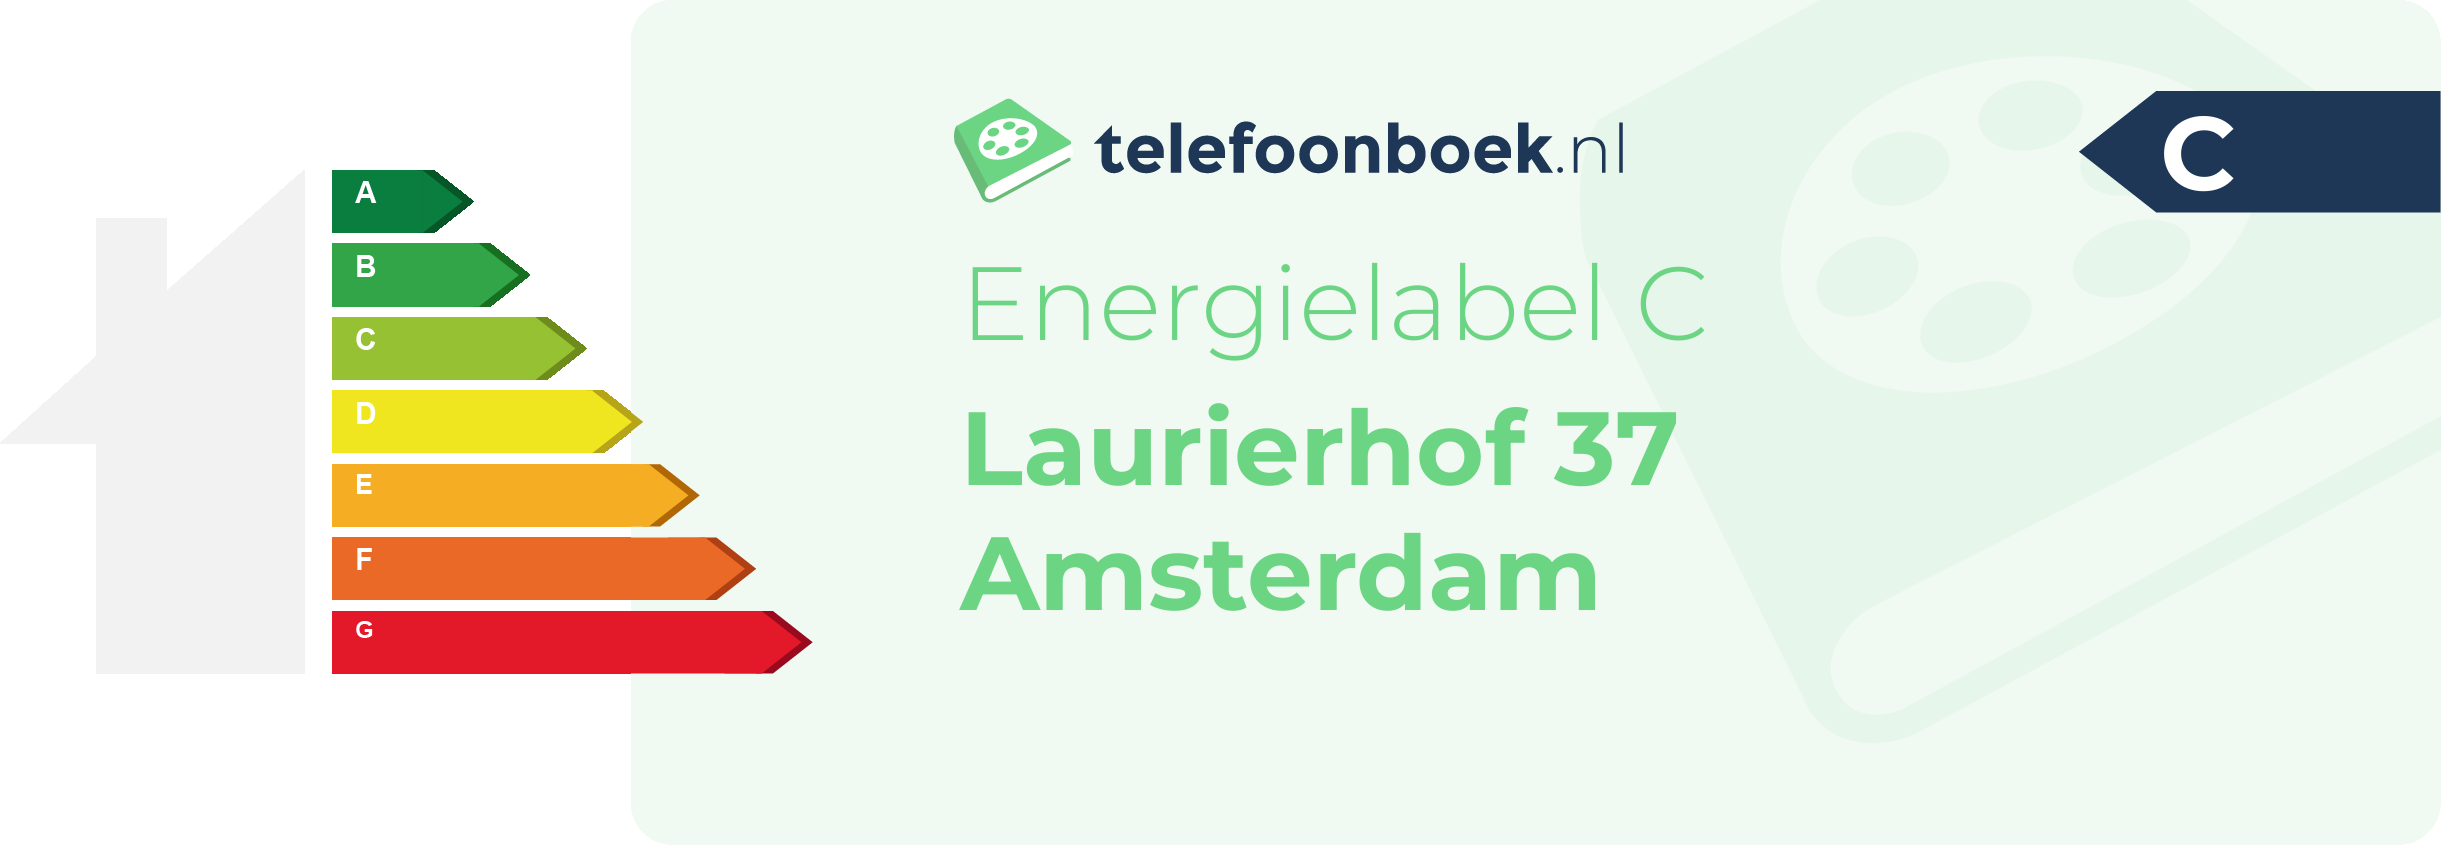 Energielabel Laurierhof 37 Amsterdam